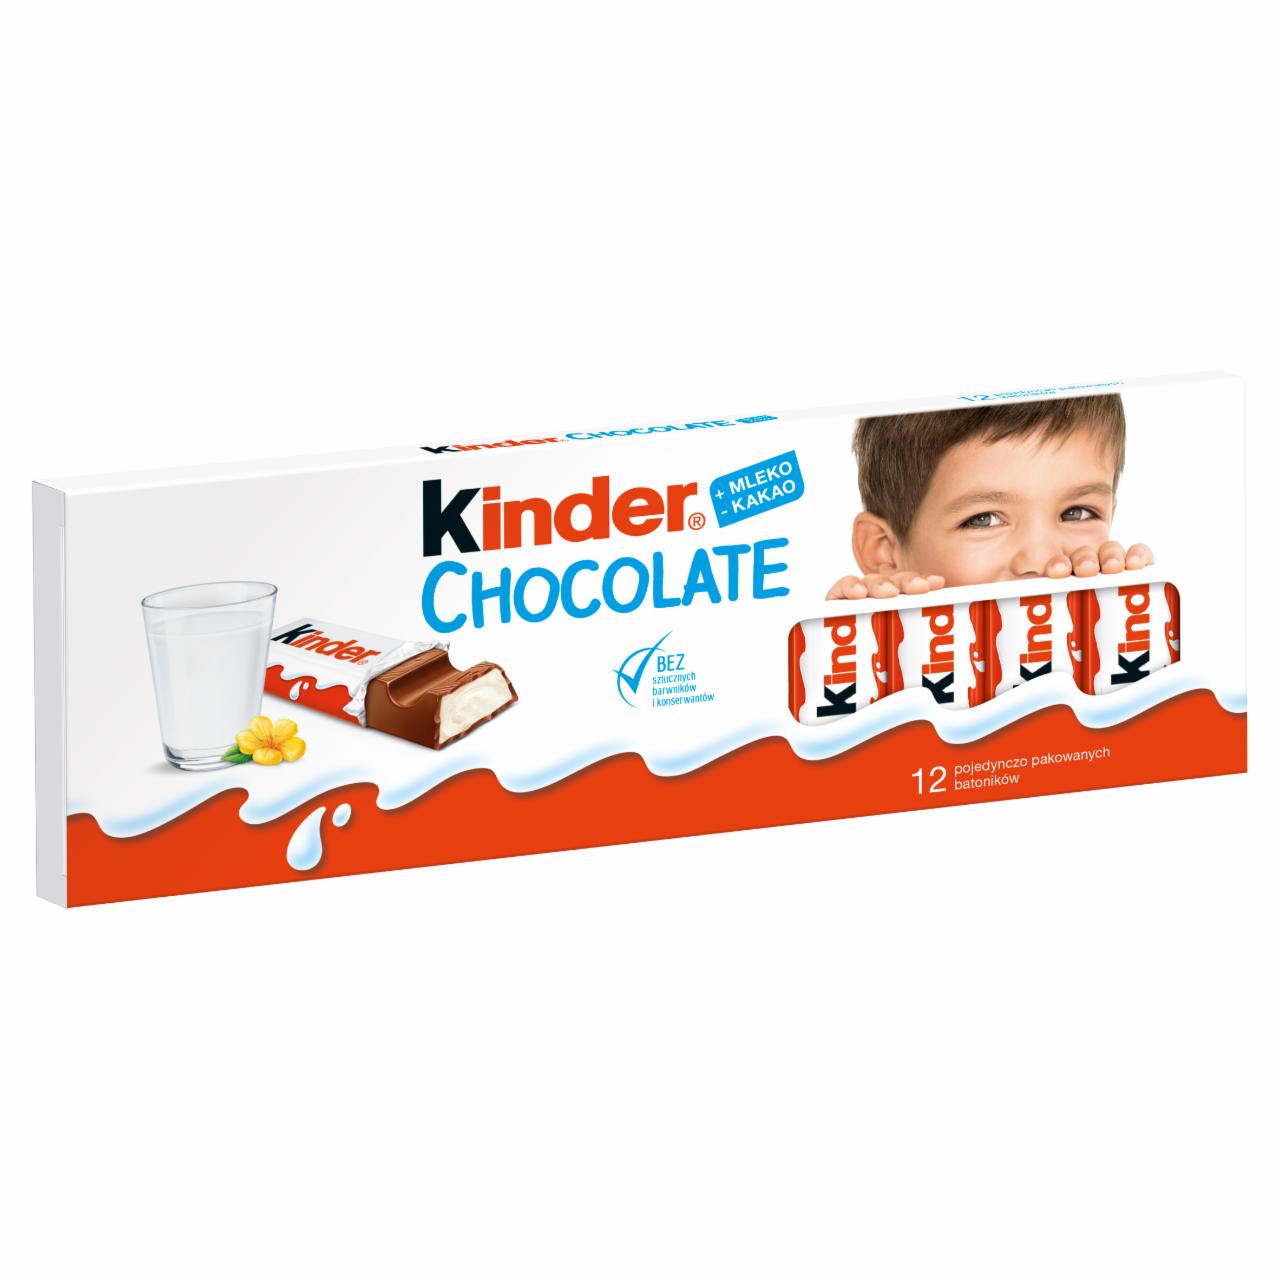 Zdjęcia - Chocolate Kinder